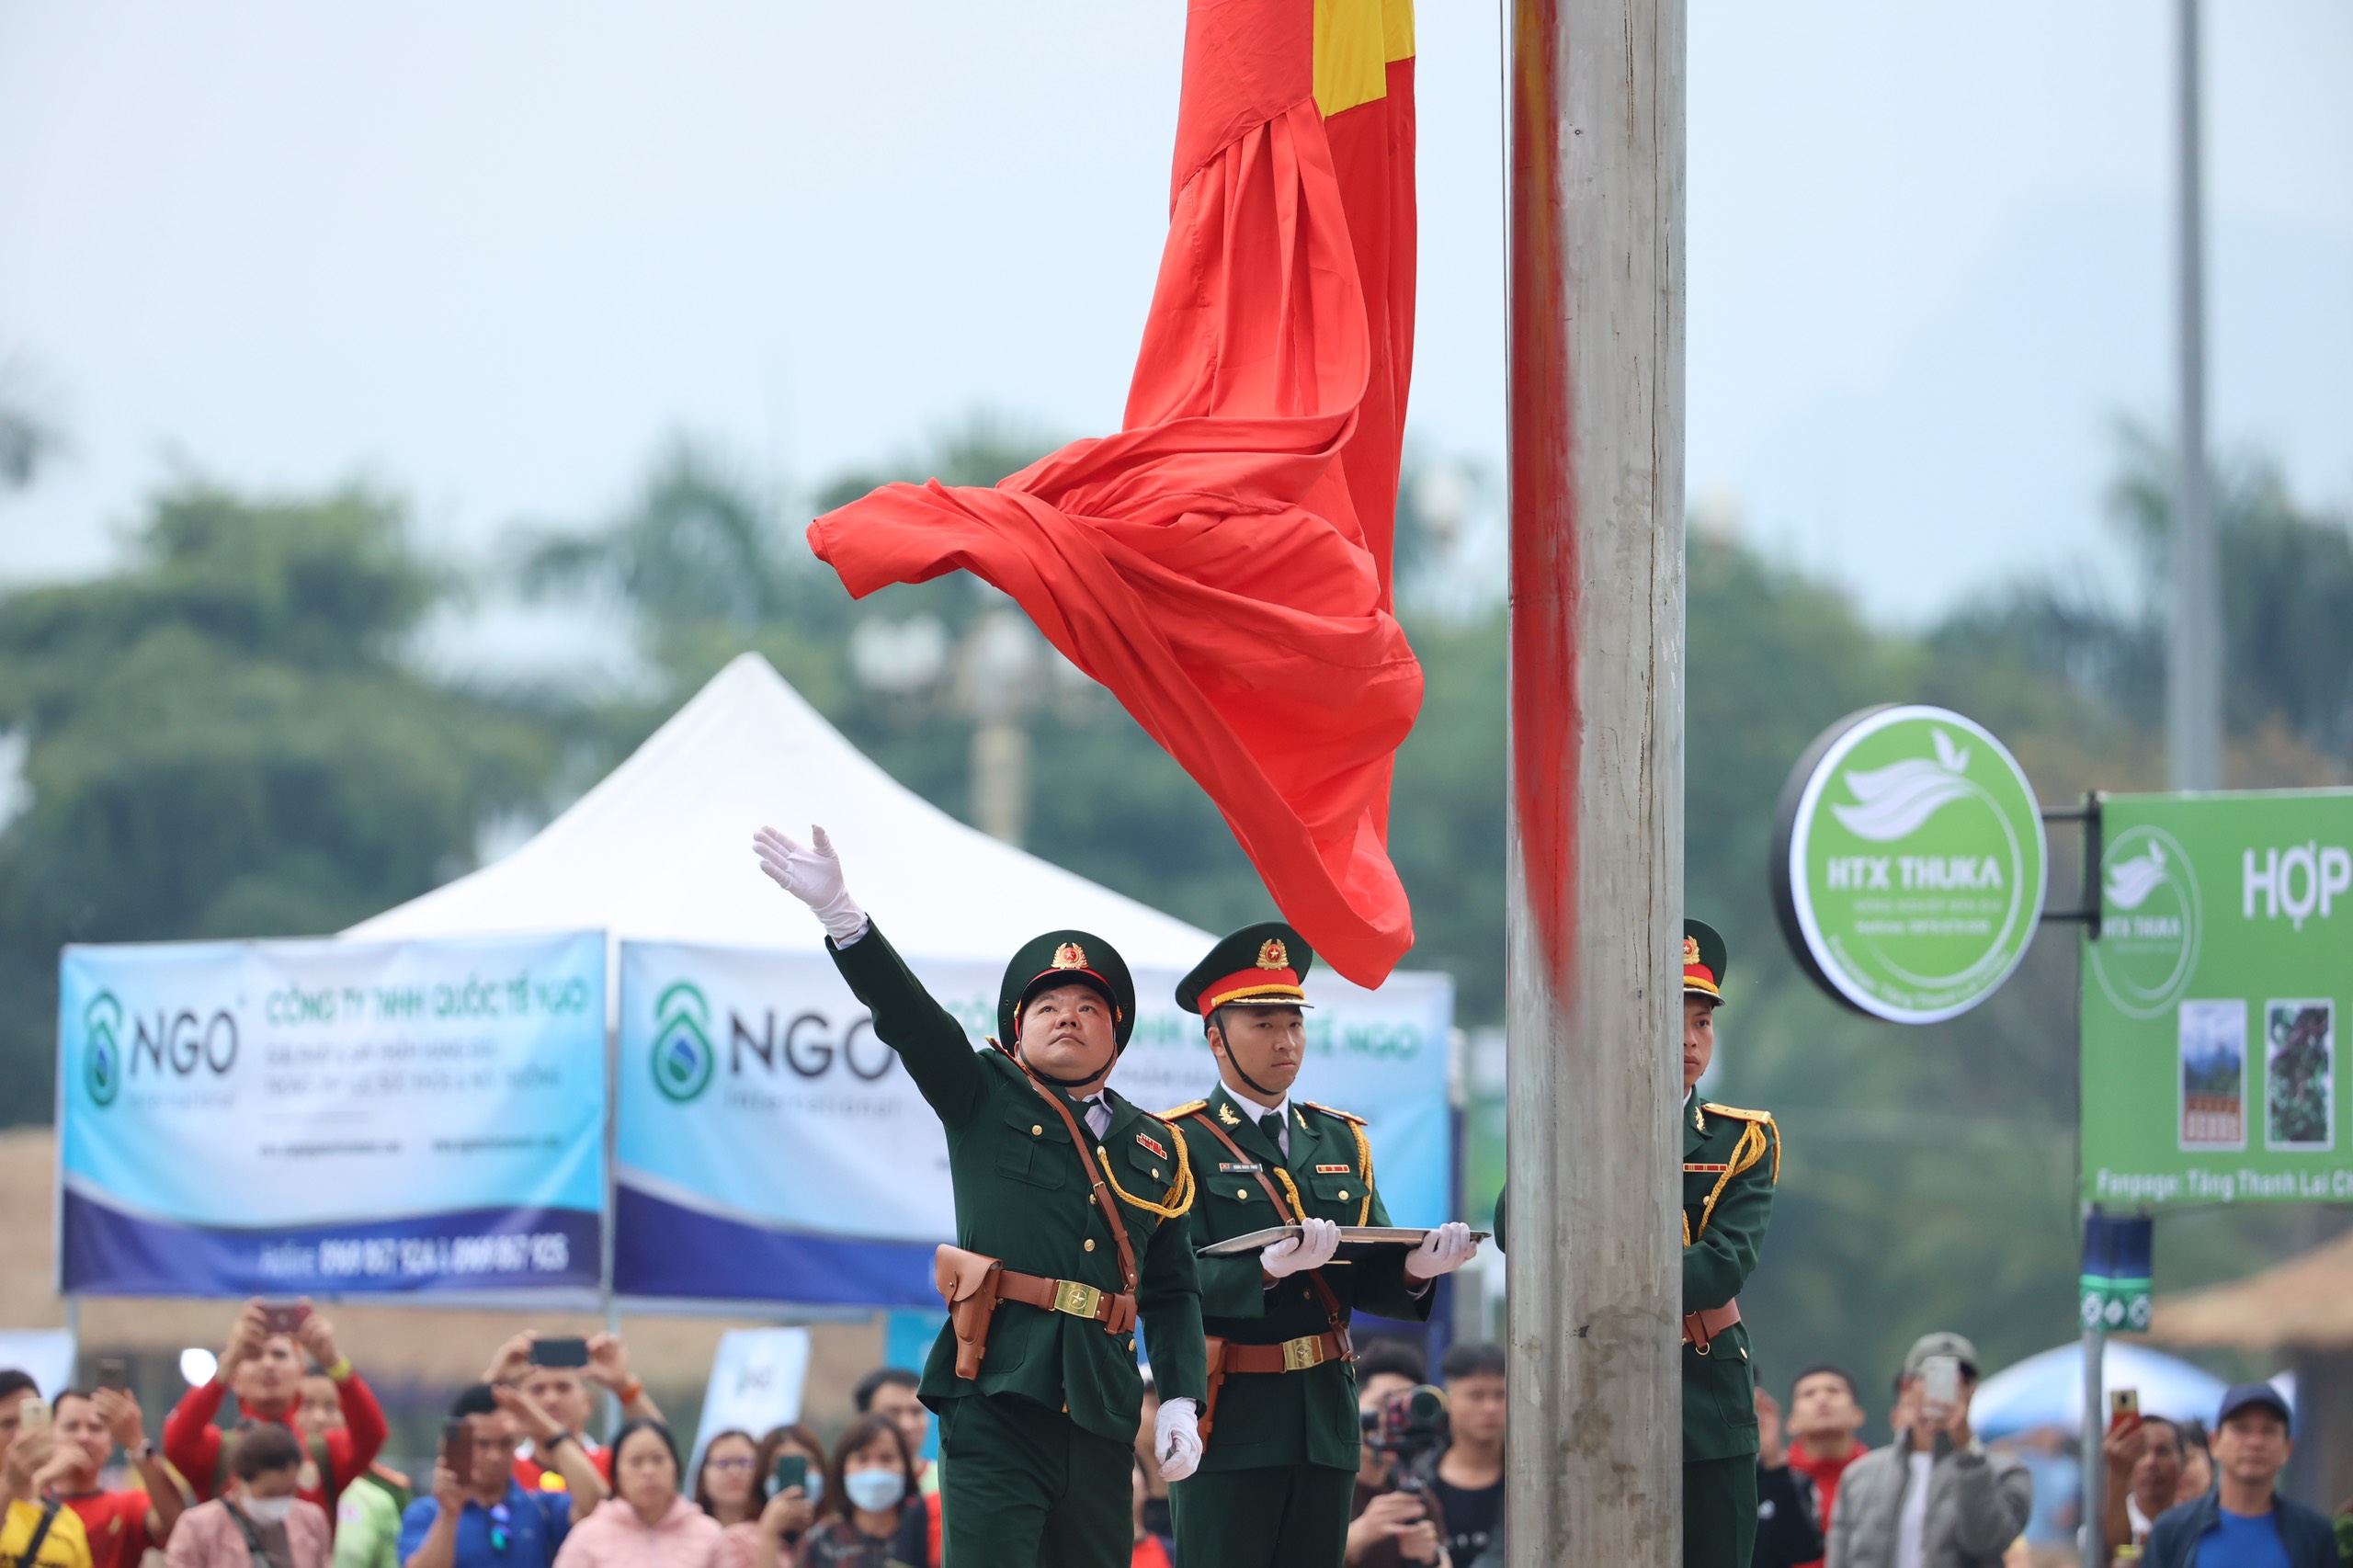 Ngay sau hiệu lệnh chào cờ, tiếng hát Quốc ca Việt Nam vang lên rộn rã, hào hùng, lá cờ Tổ quốc được chiến sỹ đội Hồng kỳ dần thả ra